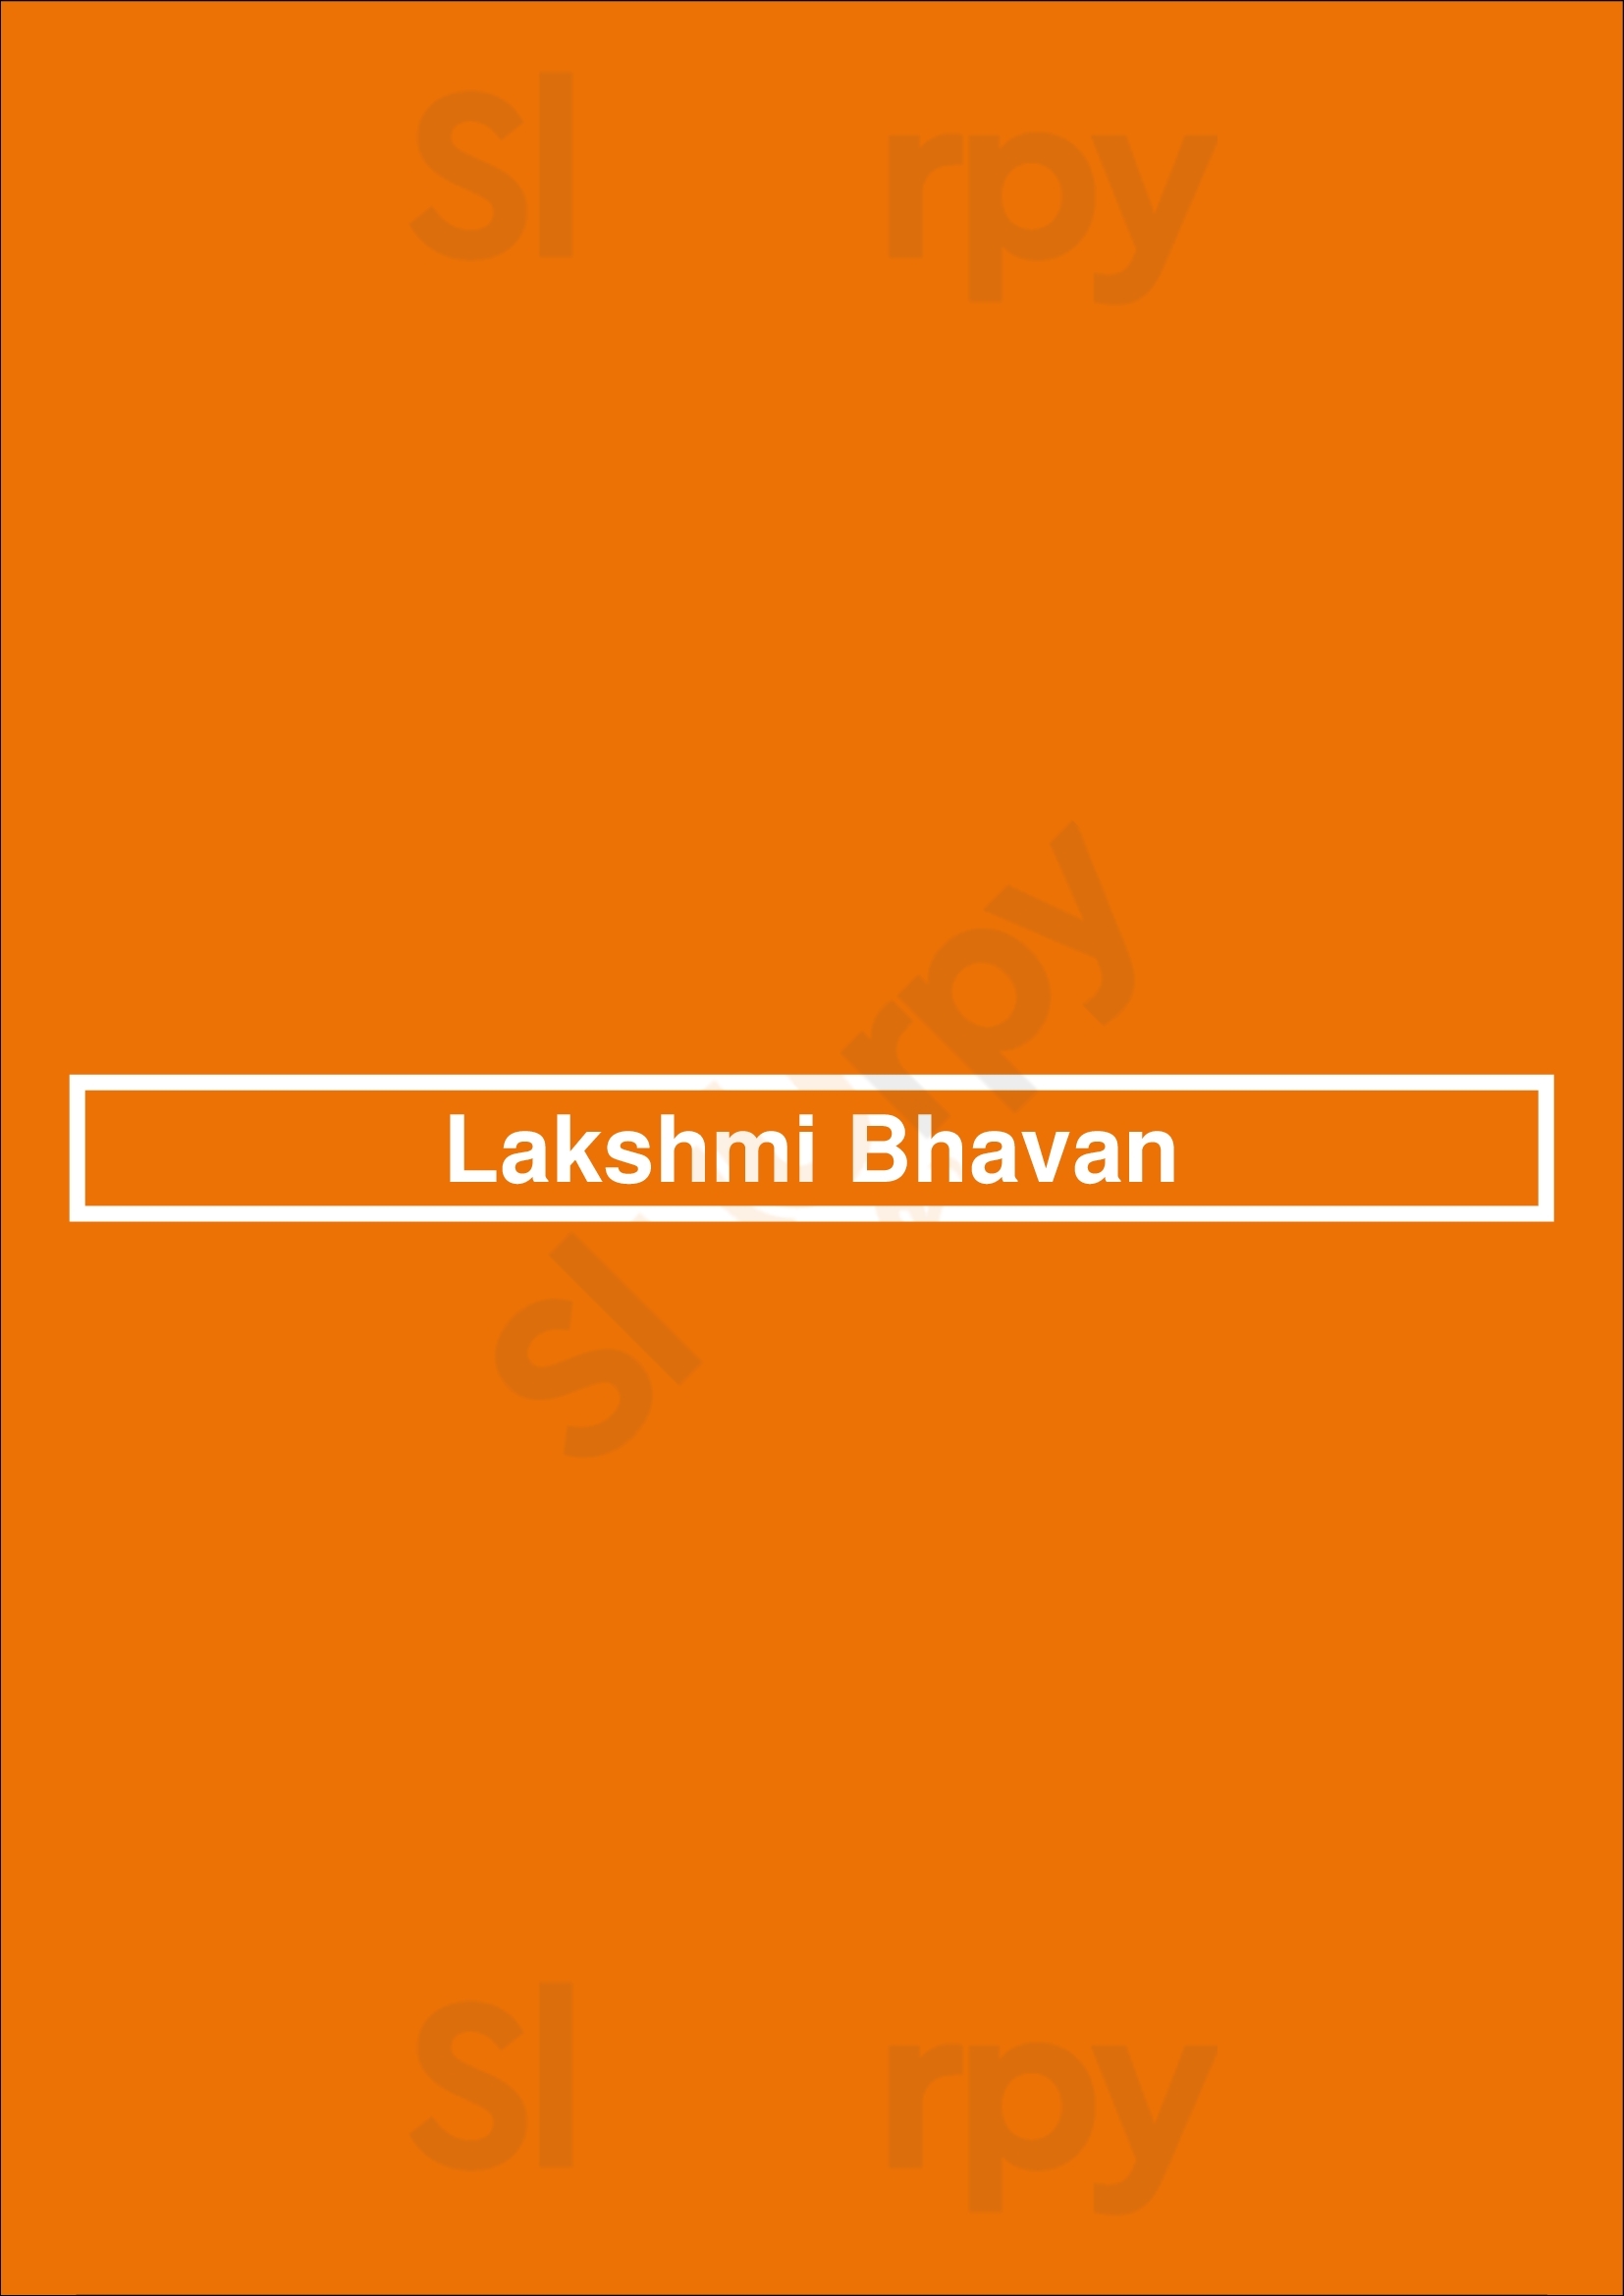 Lakshmi Bhavan Paris Menu - 1